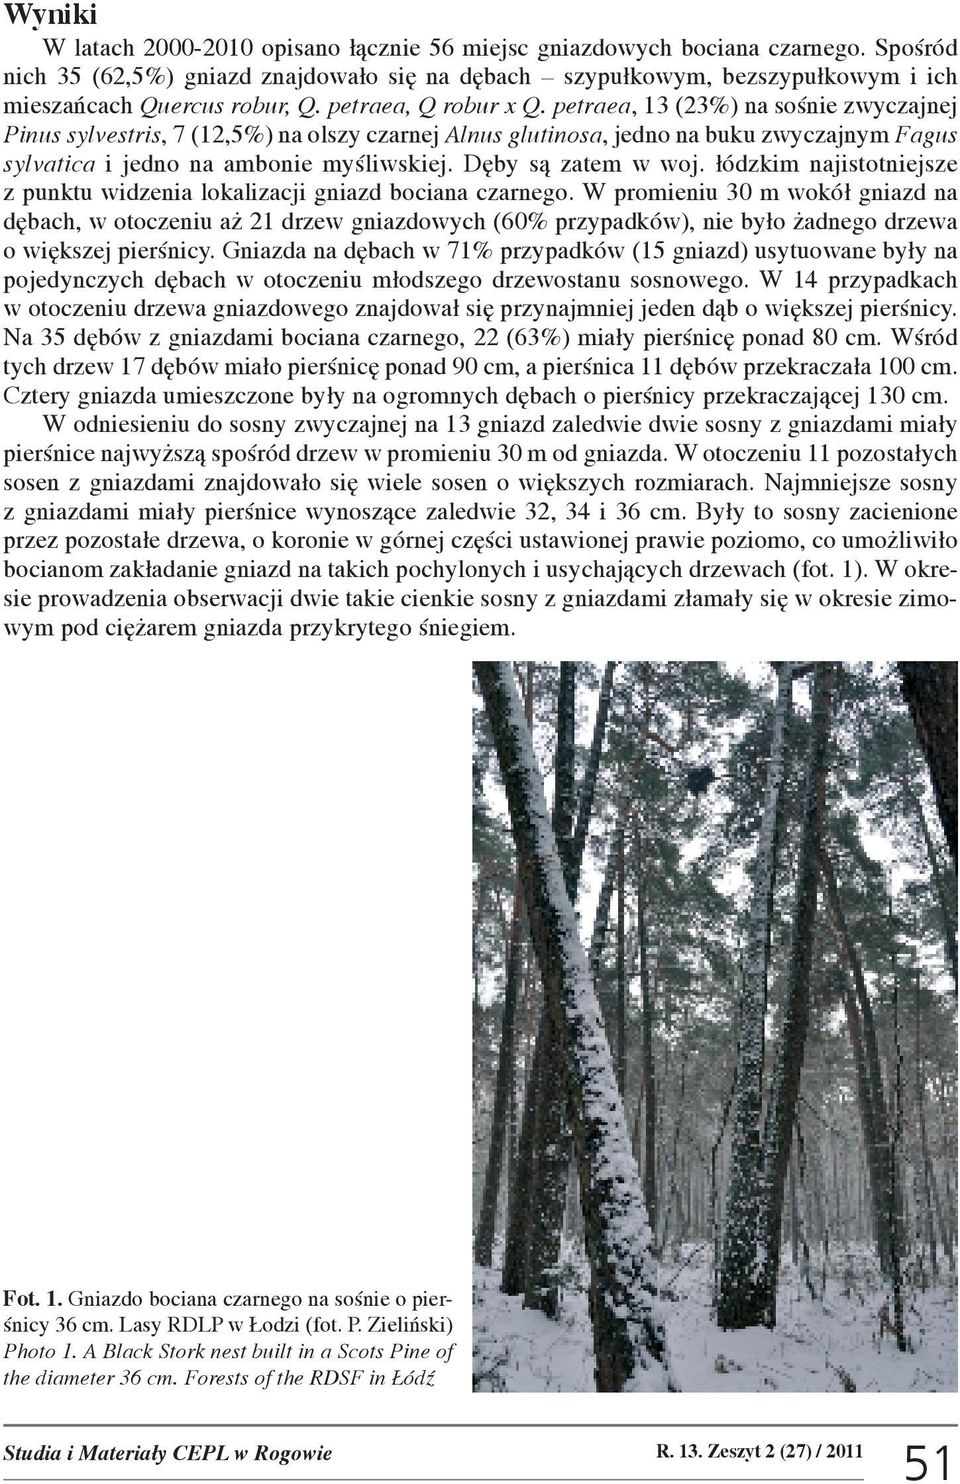 petraea, 13 (23%) na soœnie zwyczajnej Pinus sylvestris, 7 (12,5%) na olszy czarnej Alnus glutinosa, jedno na buku zwyczajnym Fagus sylvatica i jedno na ambonie myœliwskiej. Dêby s¹ zatem w woj.